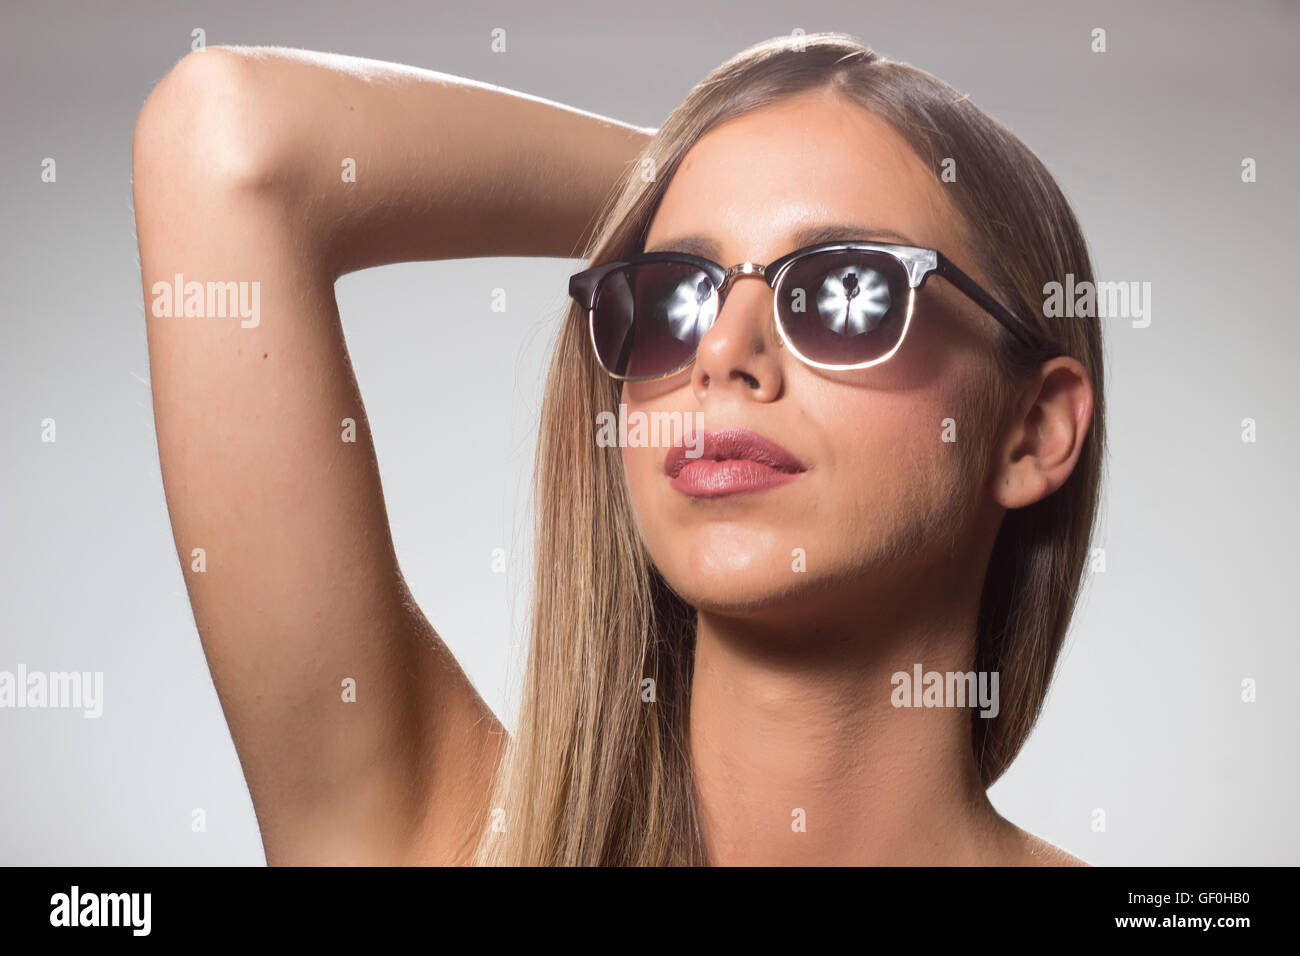 Giovane donna bellezza occhiali da sole head up braccio sollevato Foto Stock